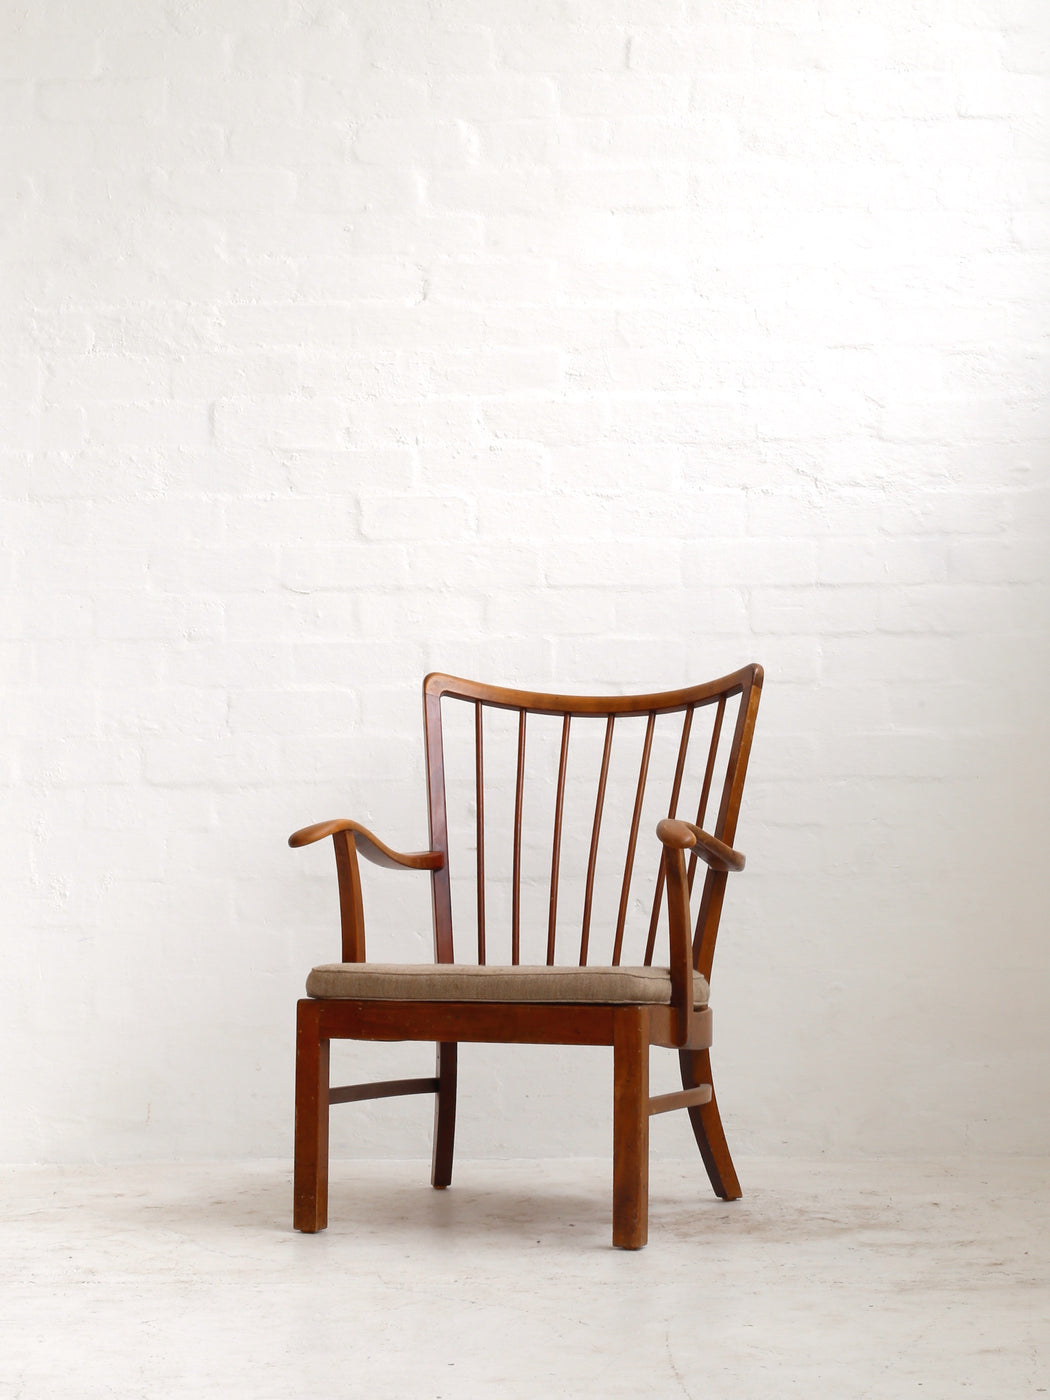 Søren Hansen 'Model 1628' Chair